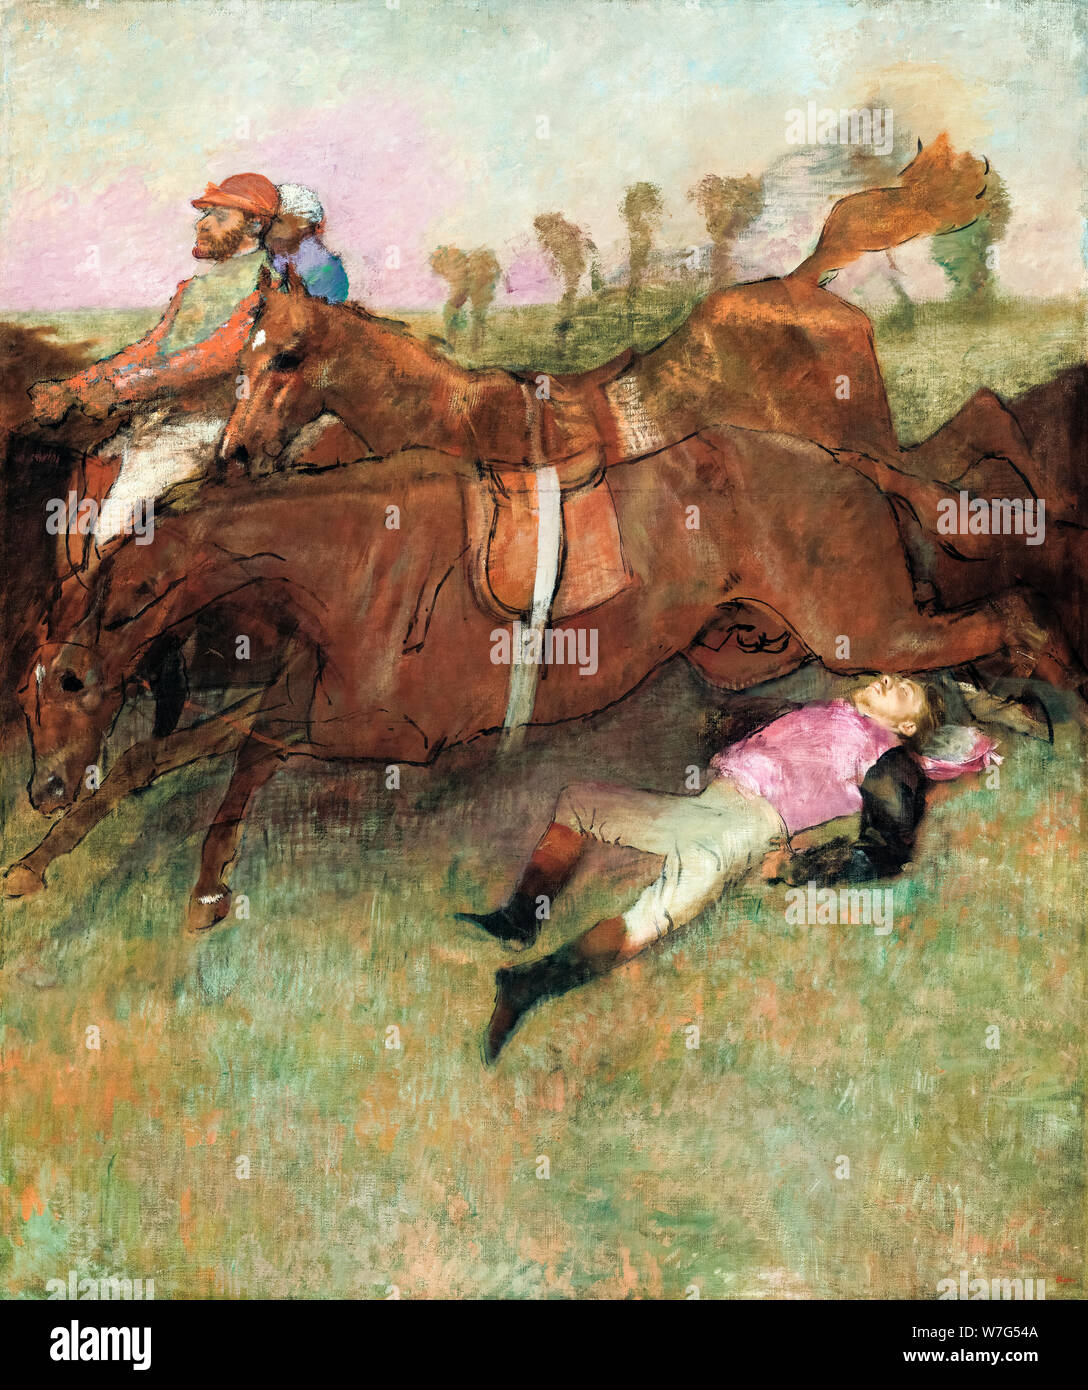 Edgar Degas, escena de la carrera de obstáculos, el Jockey caídos, pintura, 1866-1897 Foto de stock